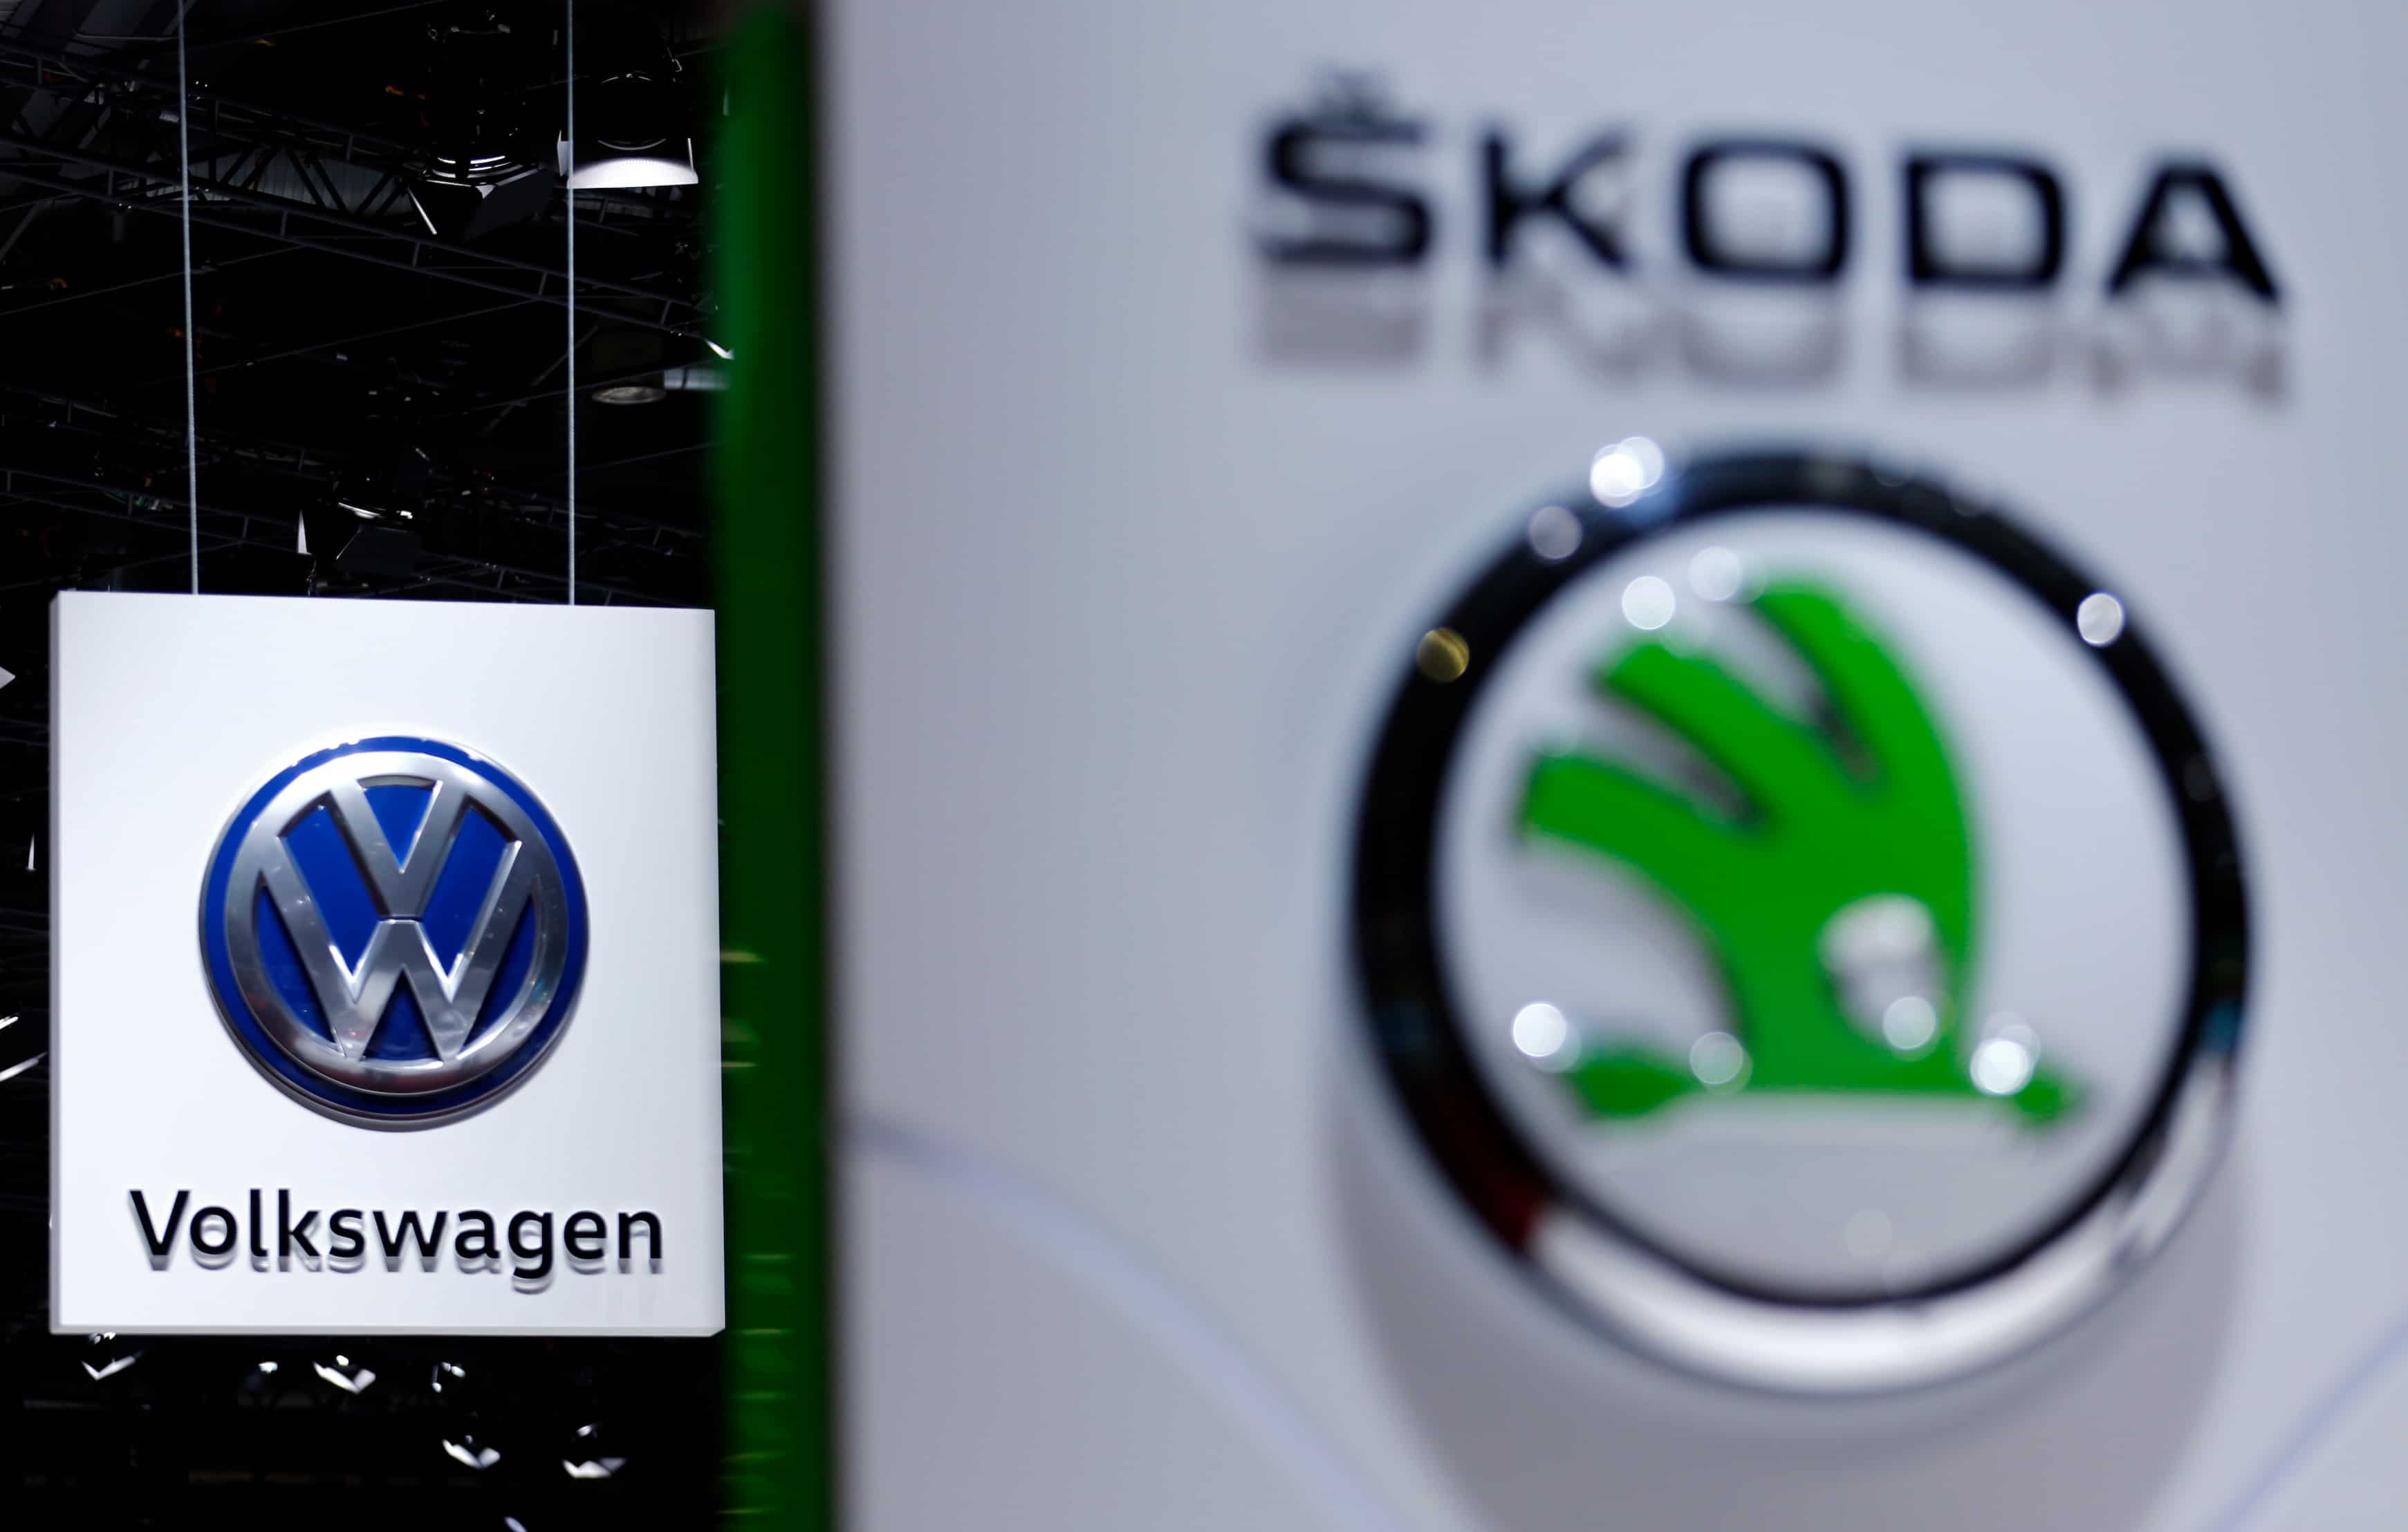 ŠKODA AUTO Volkswagen India net up 49% in FY23 at Rs 309.5 crore